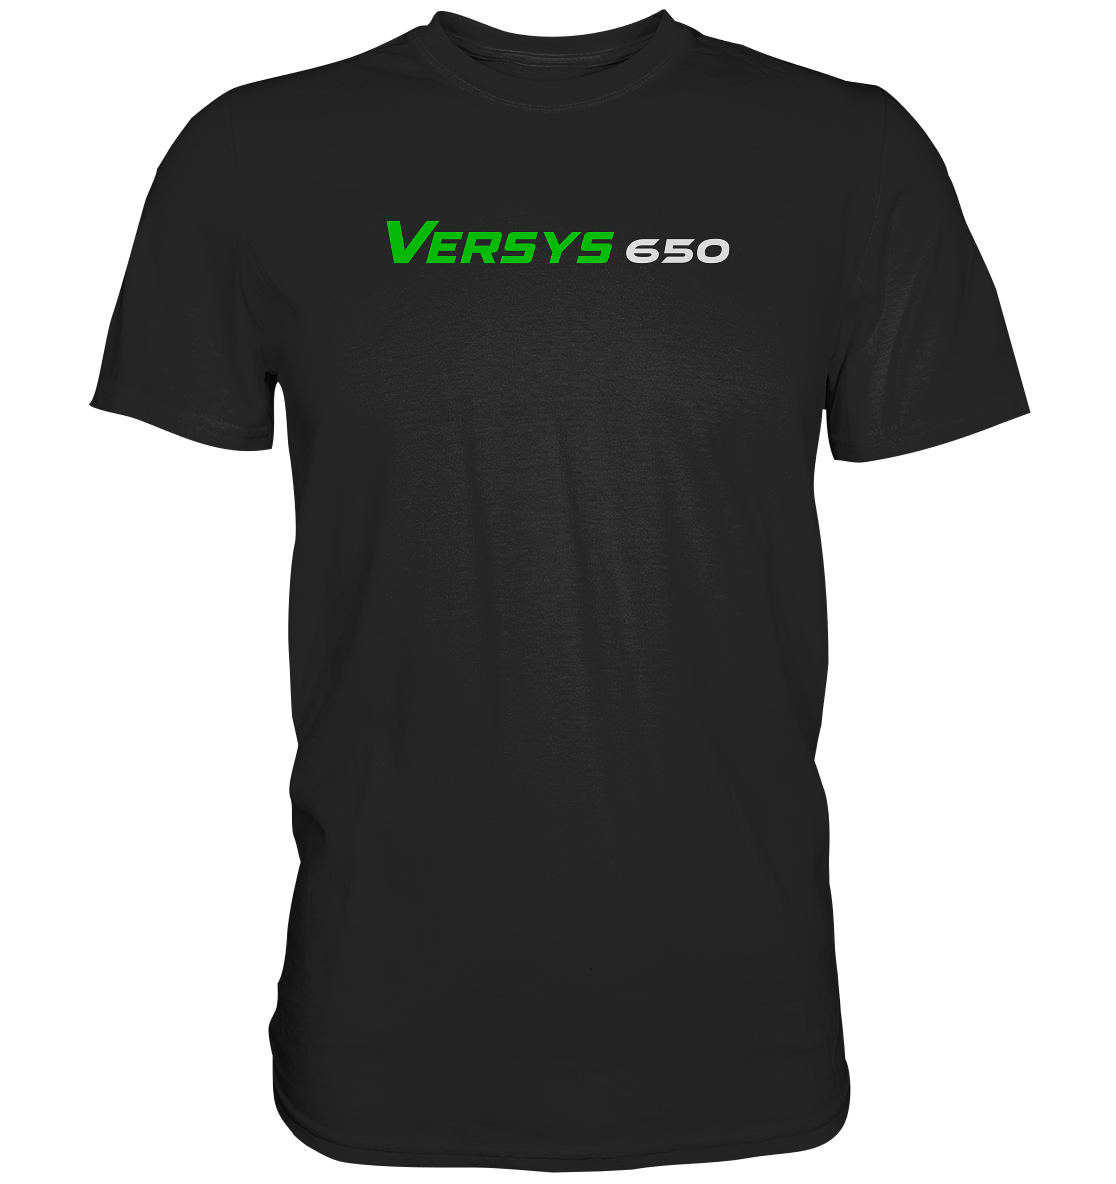 Versus 650 - Premium unisex Shirt